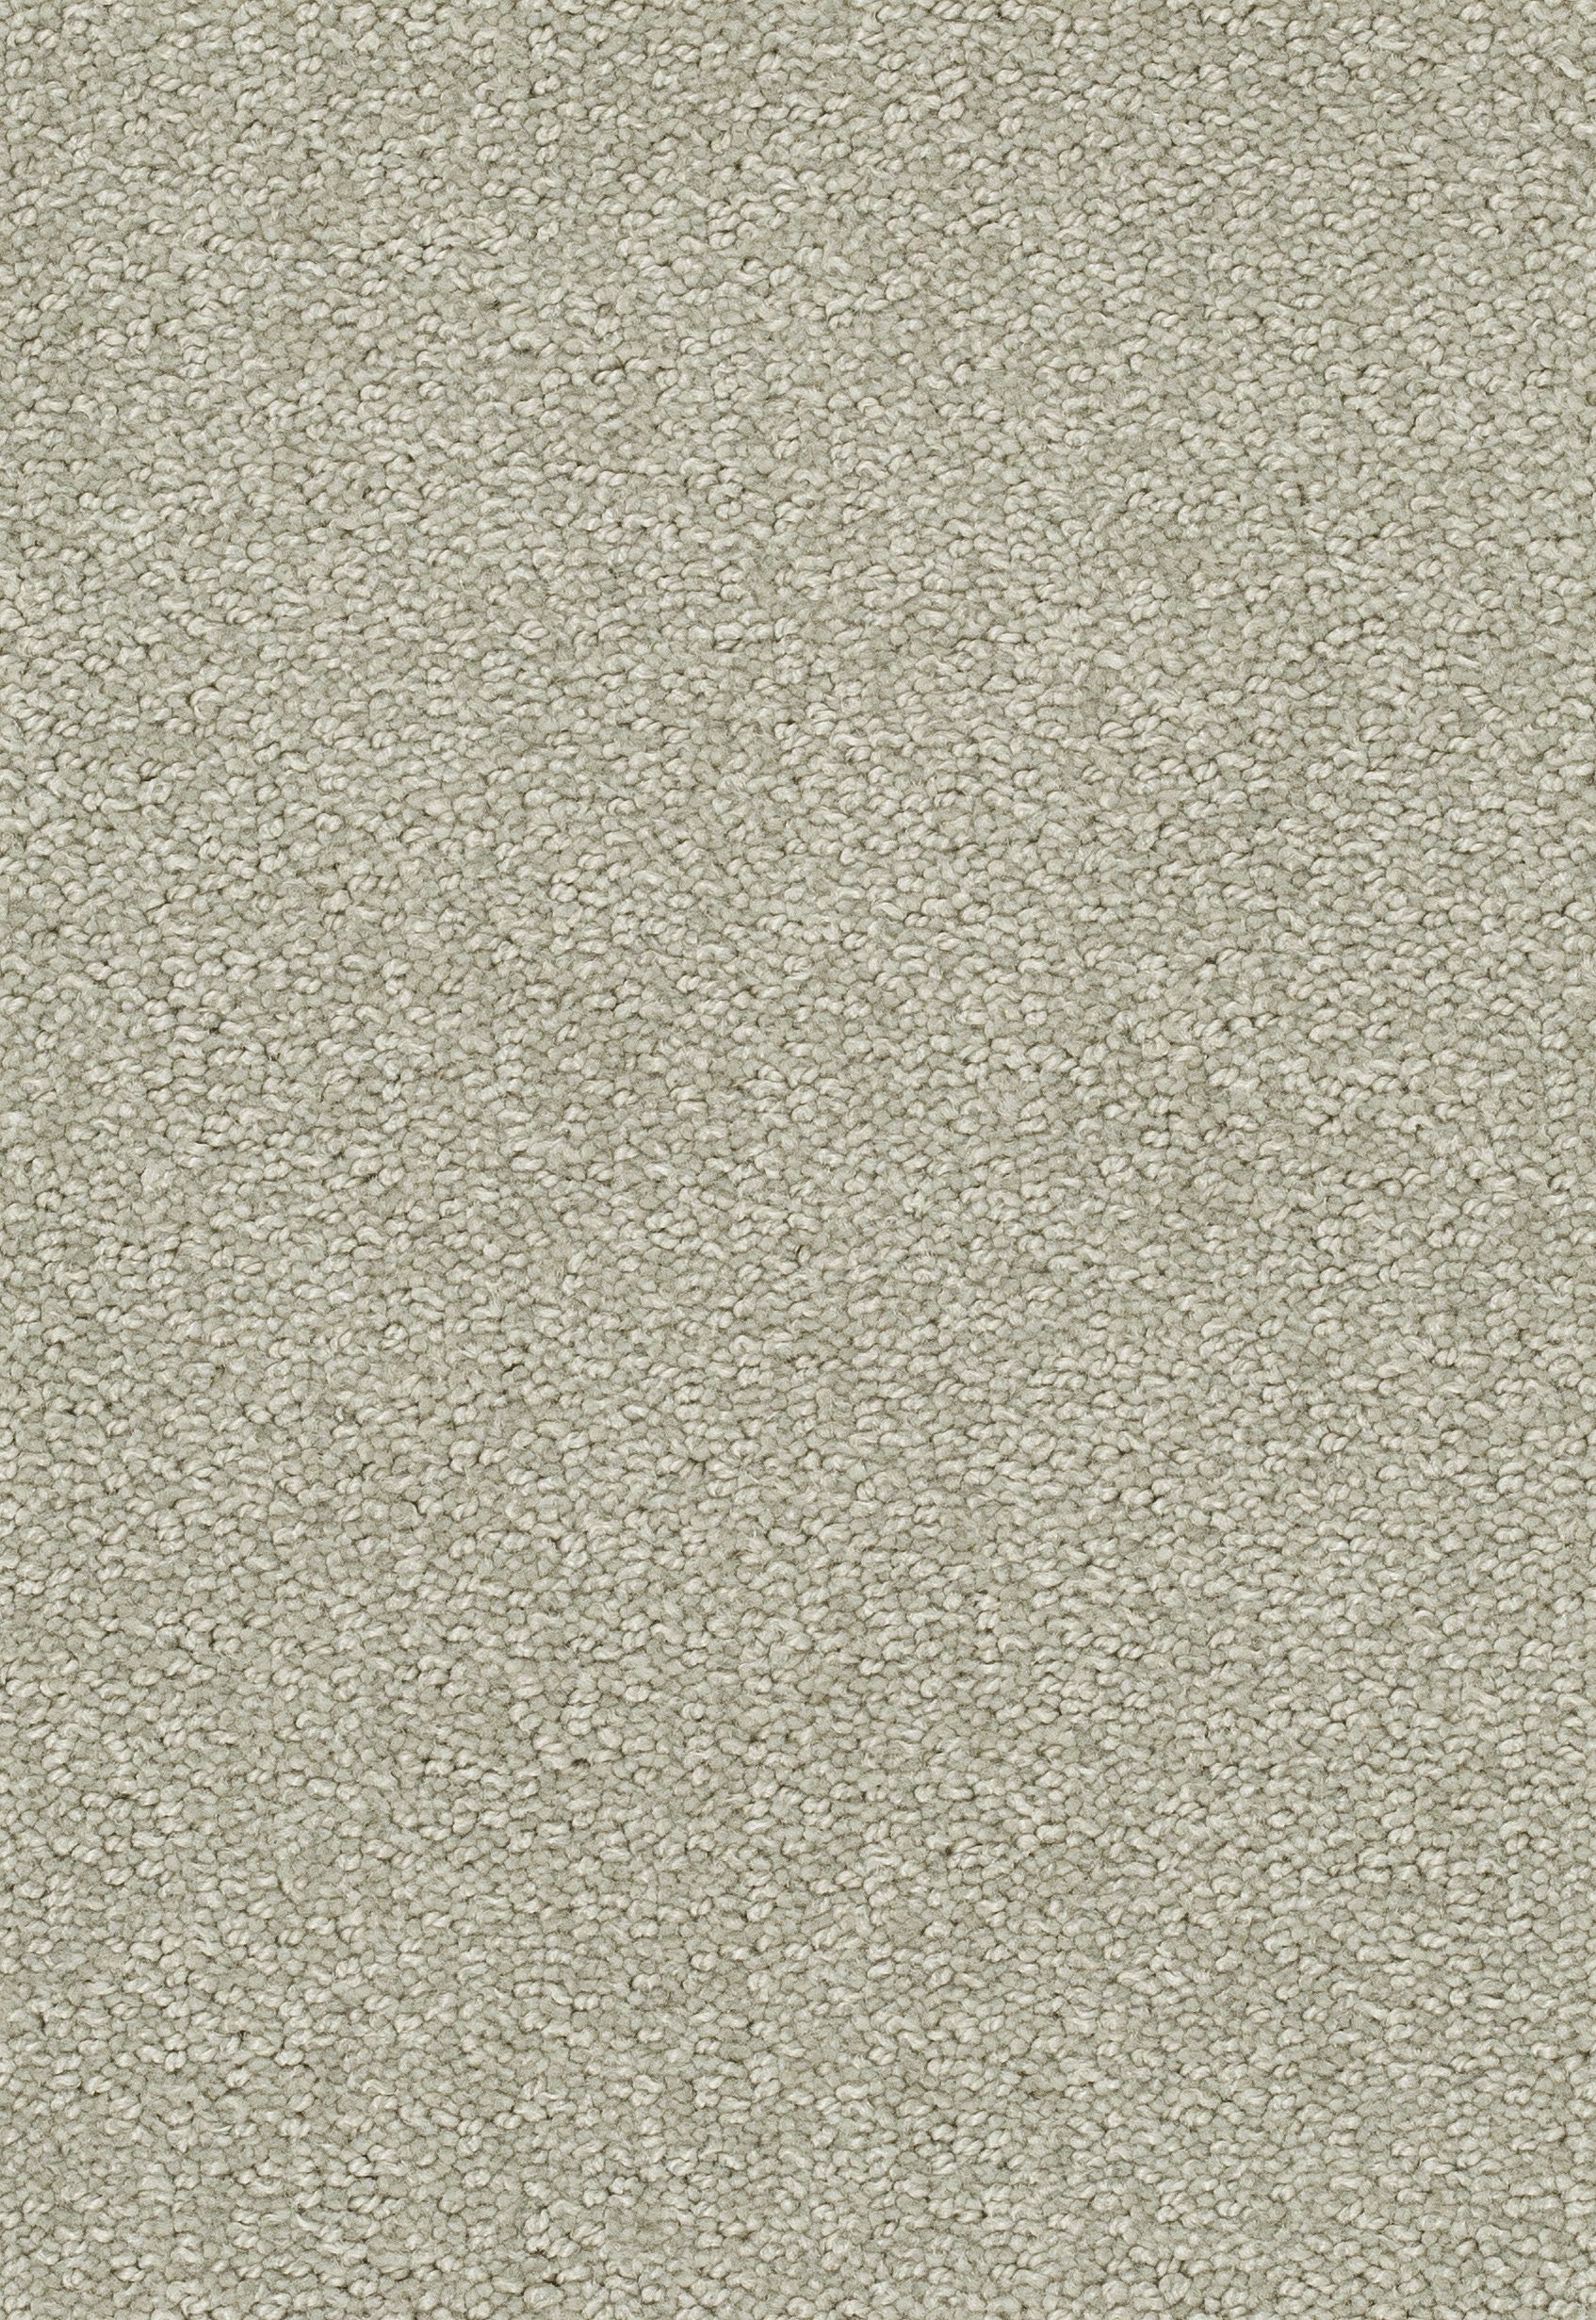 Teppichboden TANGO 400cm Trend 23 Farbe 122